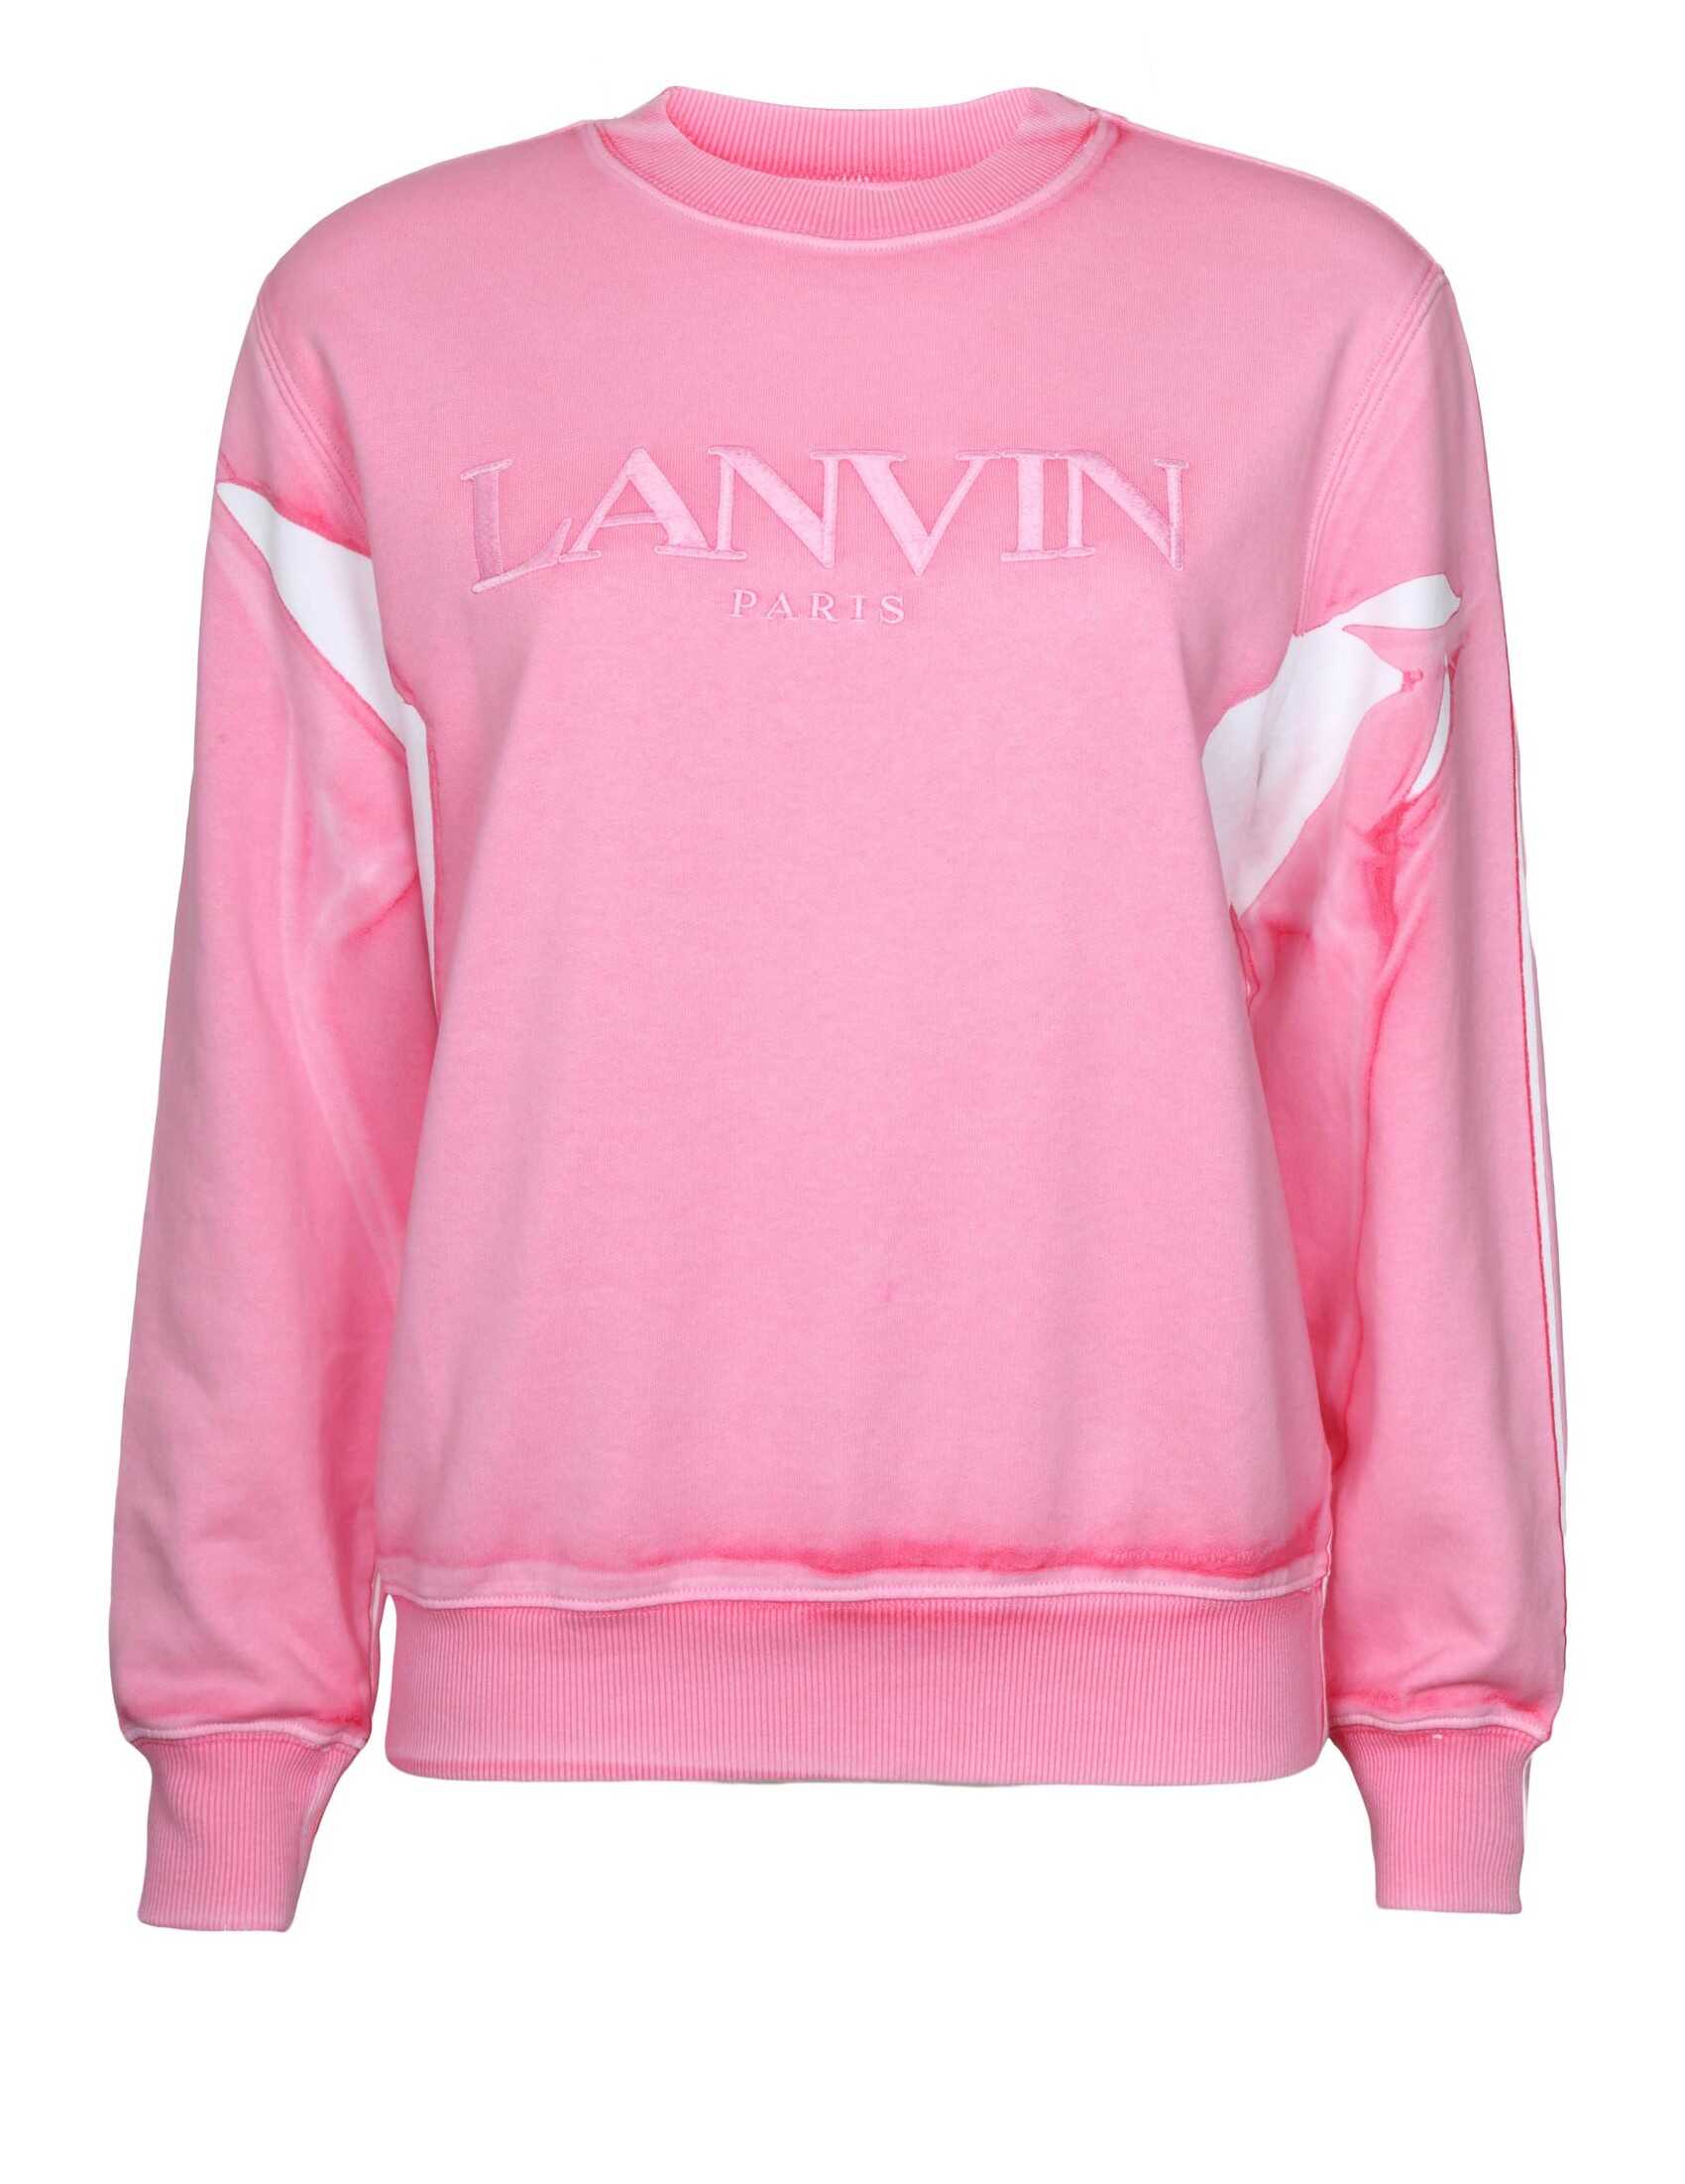 Lanvin sweatshirt sweatshirt in cotton with logo in tone N/A